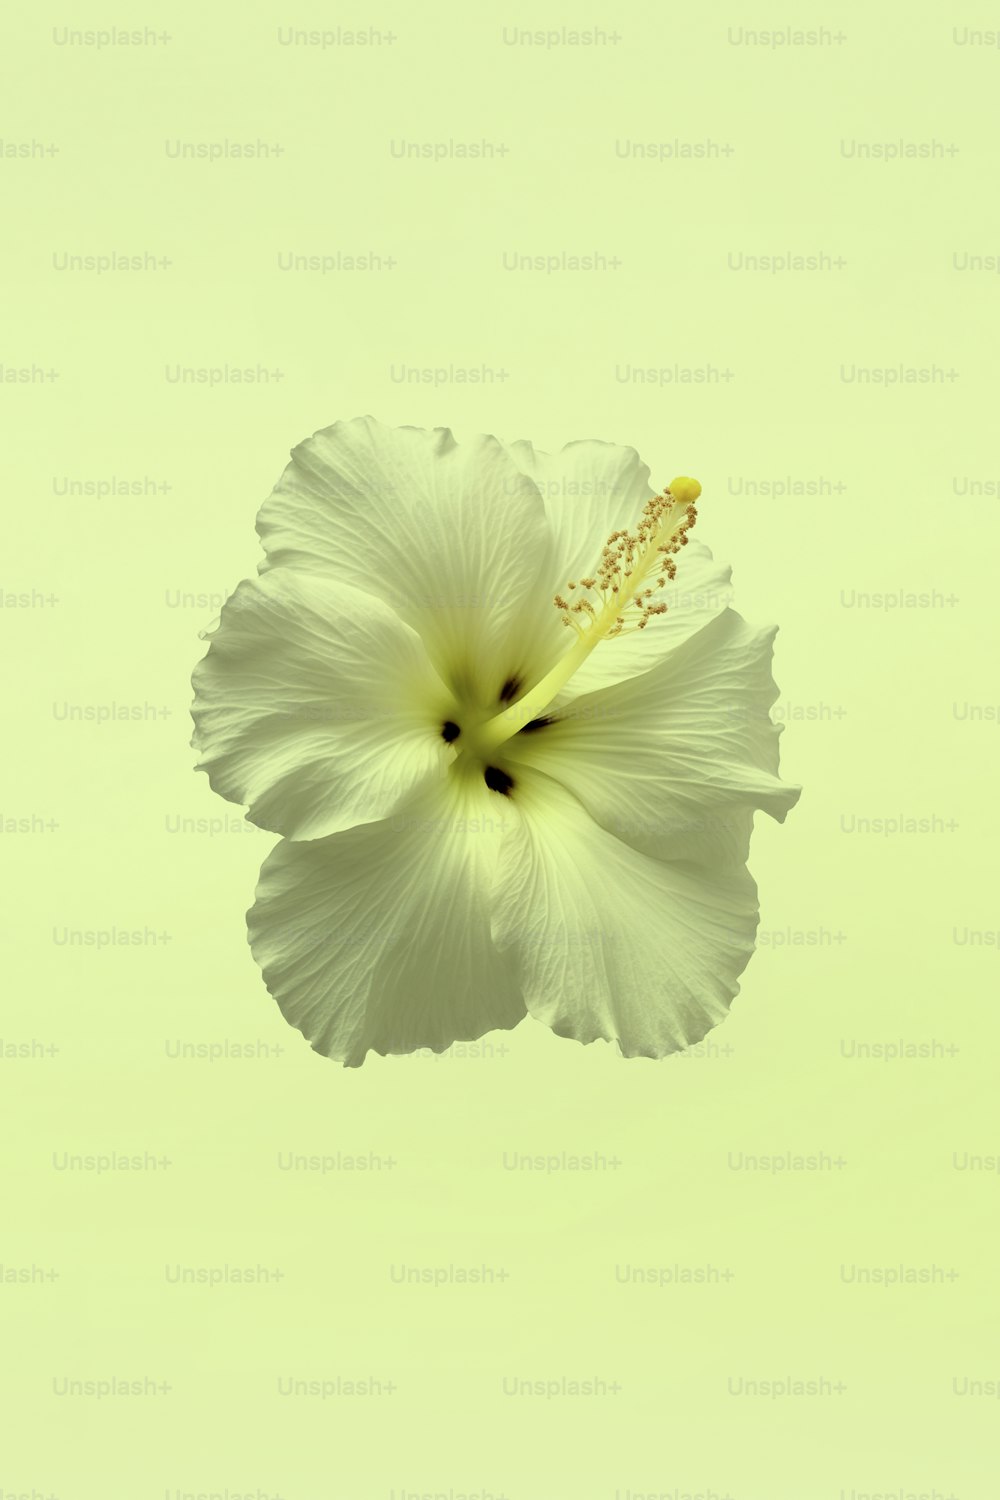 une fleur blanche avec un centre jaune dans l’air